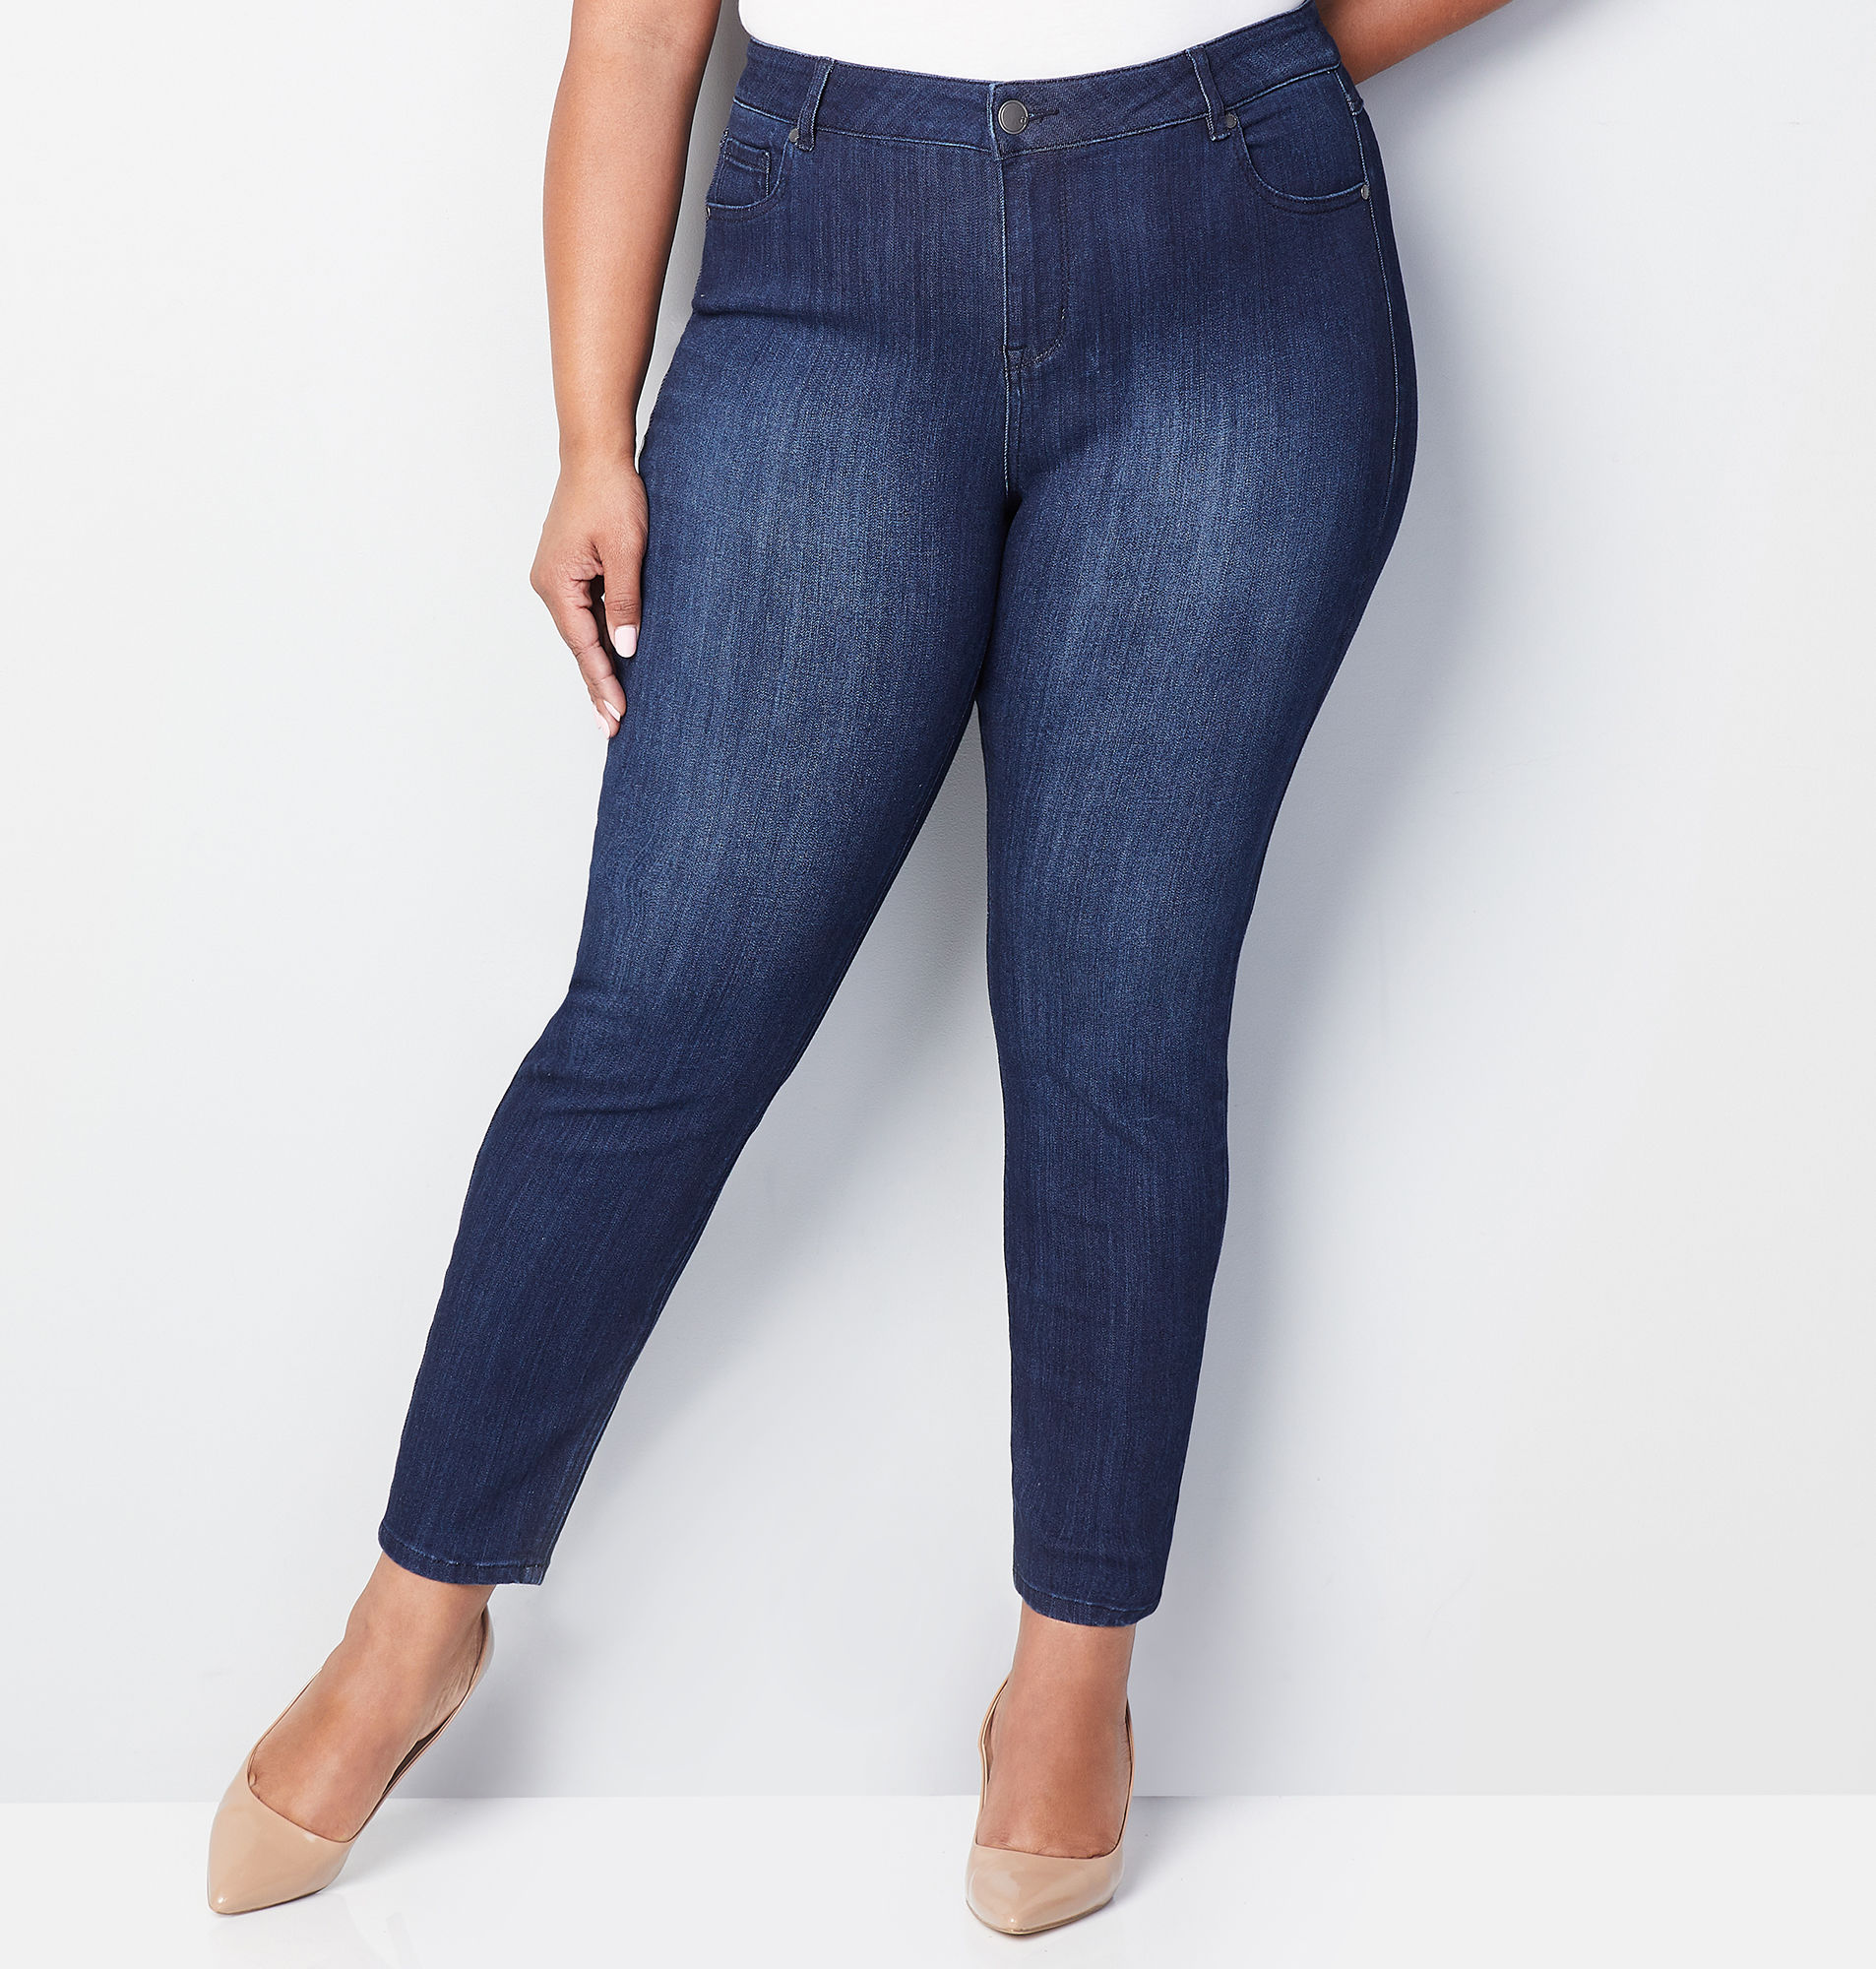 Shop Women's Plus Size Jeans Size 26 | Avenue.com